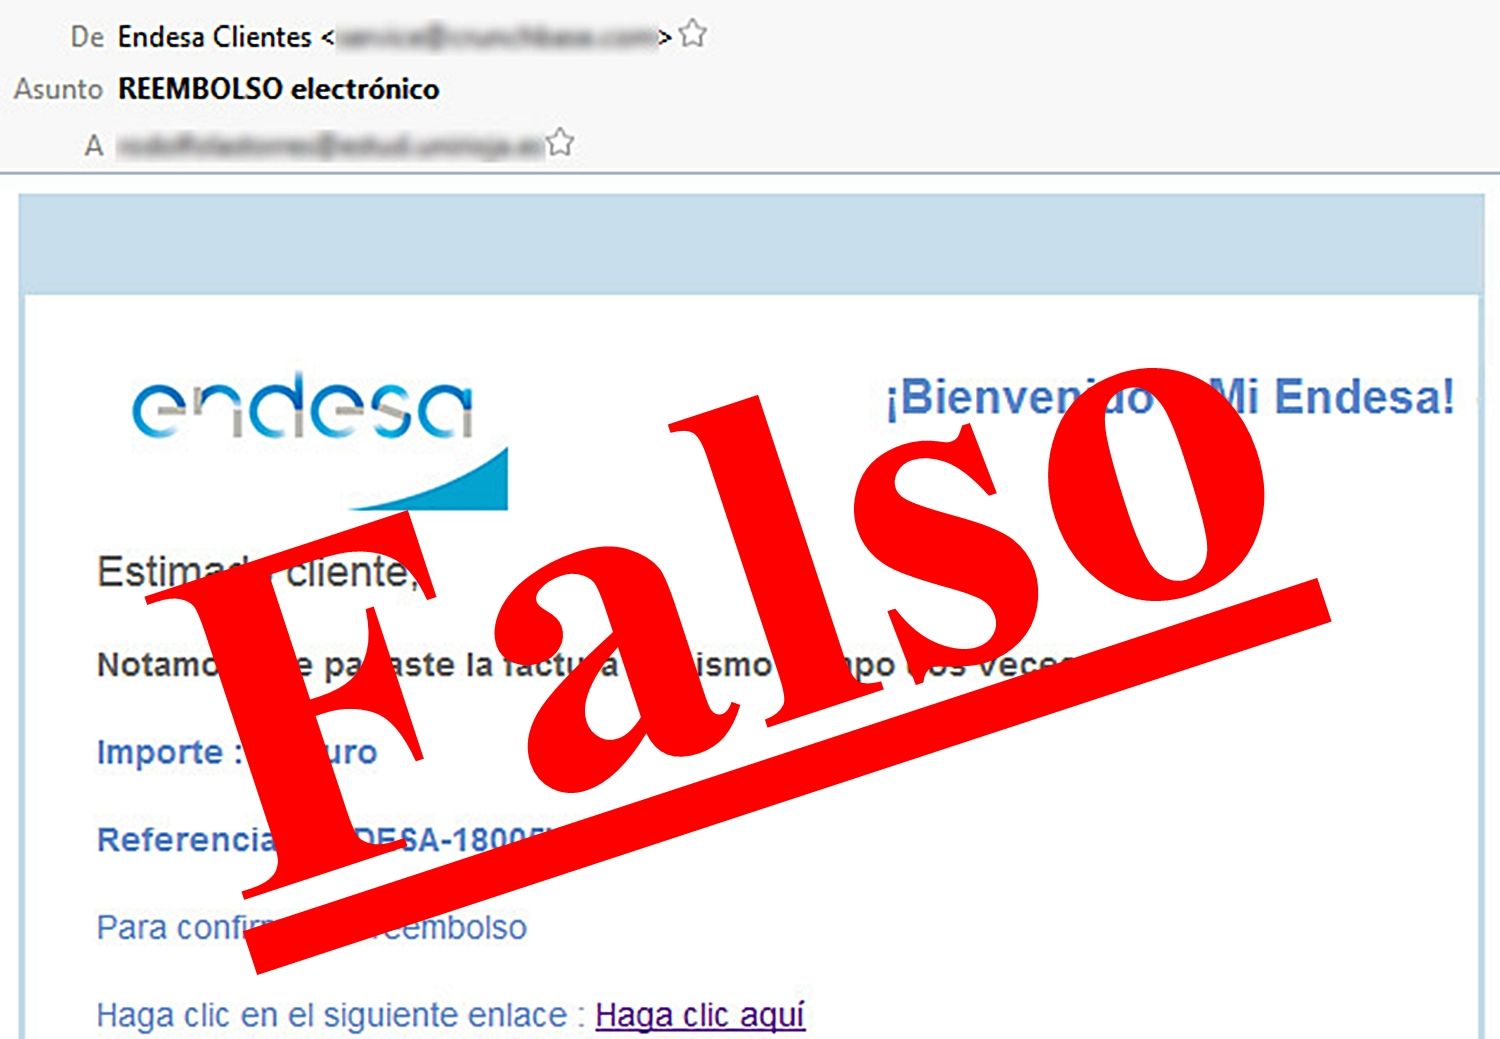 Una vez más, los hackers intentan usar la marca Endesa para un intento de phishing.